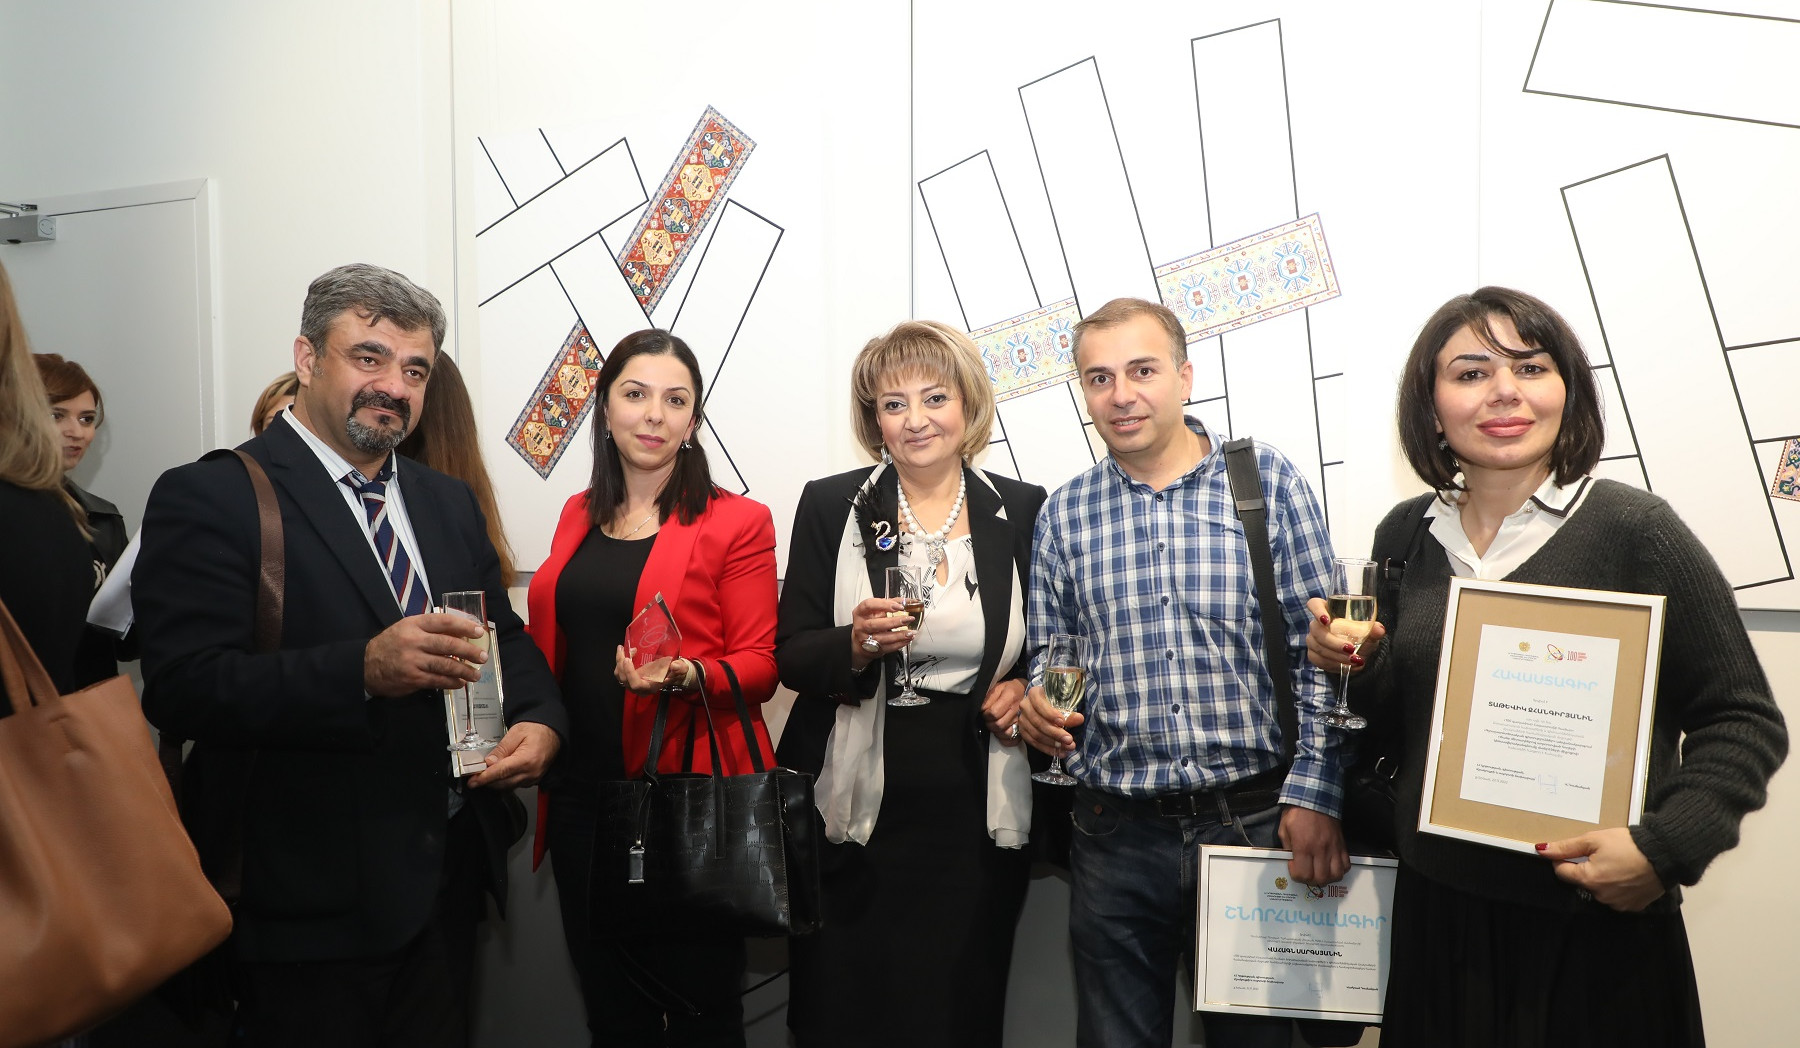 Ամփոփվել է «100 գաղափար Հայաստանի համար» մրցույթը. հաղթողներն արժանացել են դրամական խրախուսանքի